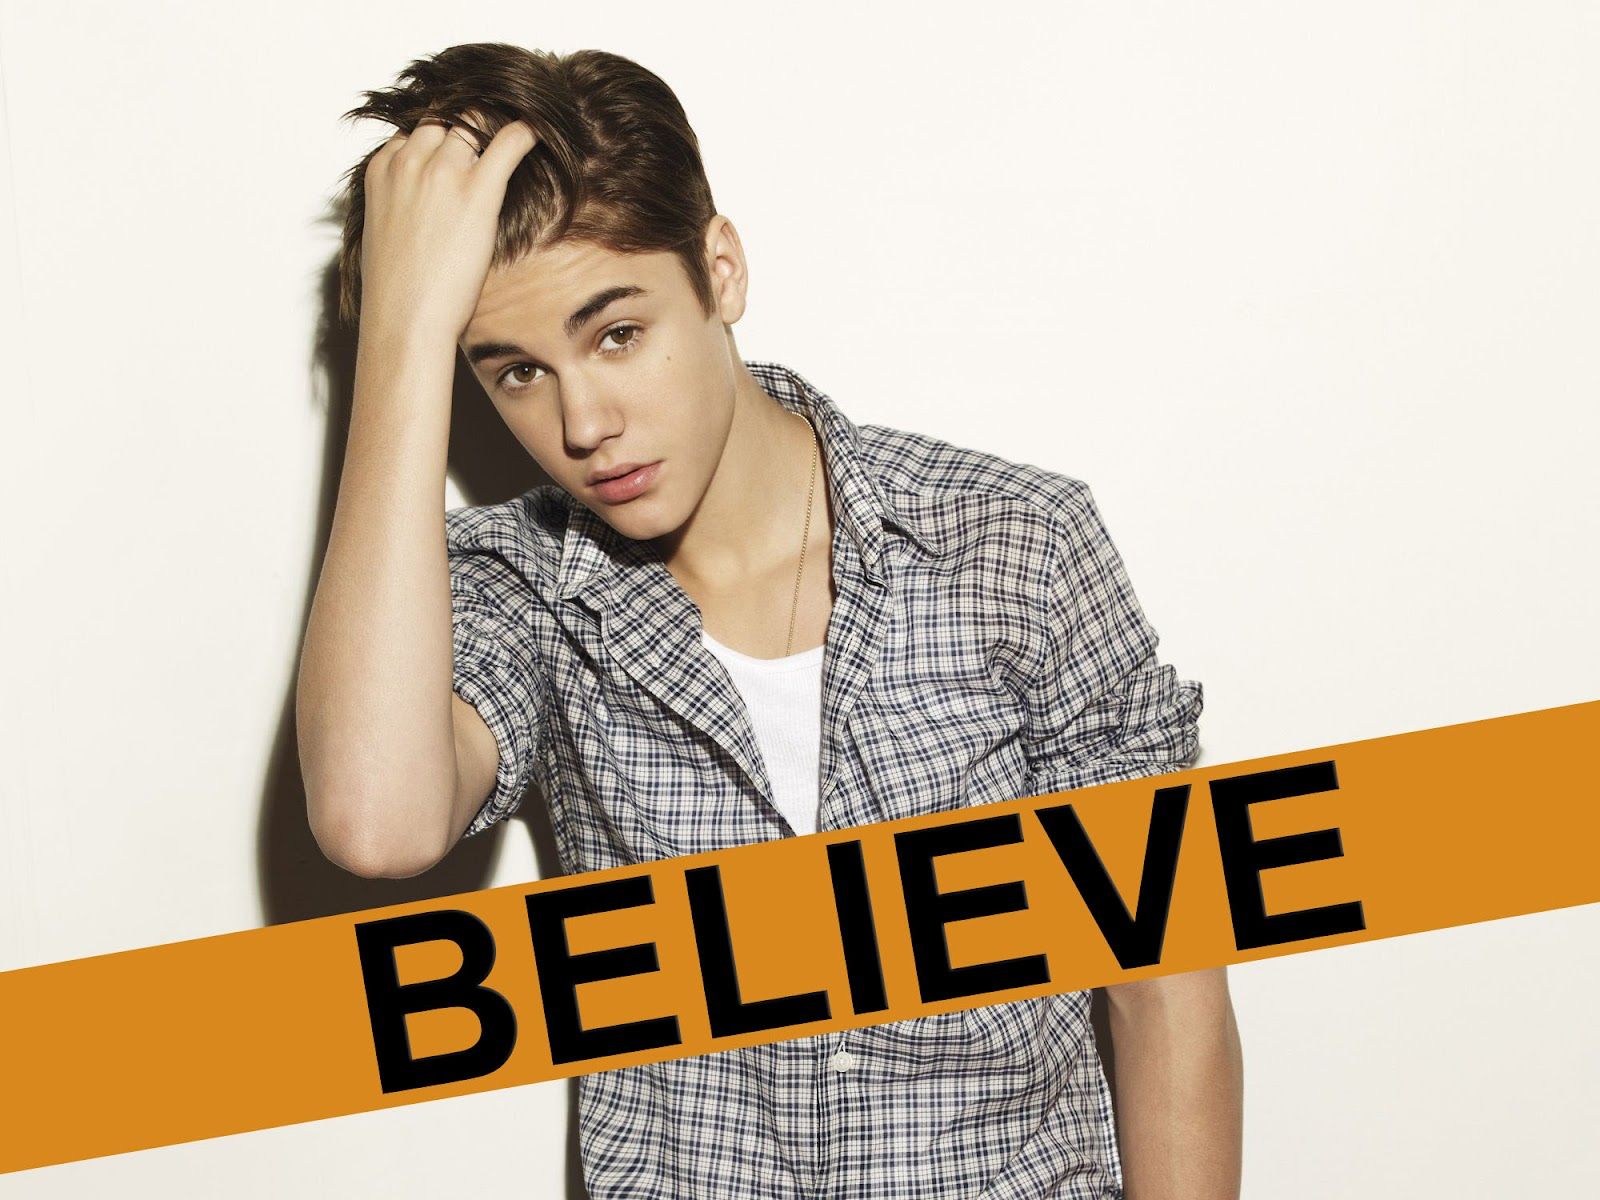 Justin Bieber Believe Album Photoshoot 58419 Loadtve